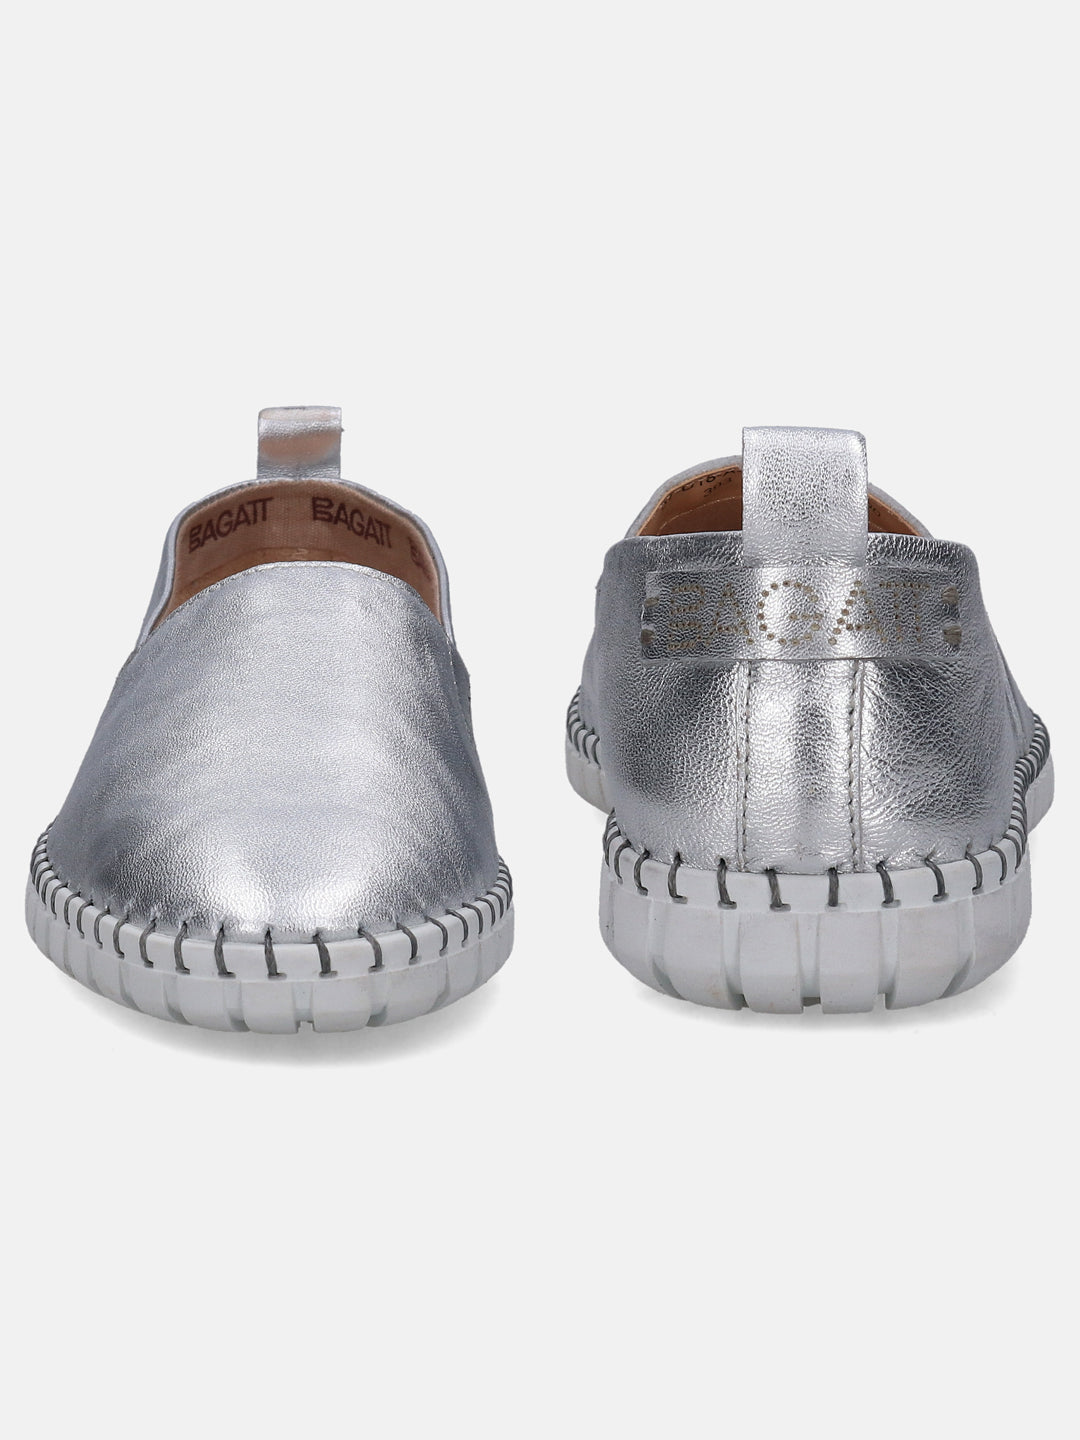 Bali Silver Slip-On Sneakers - BAGATT